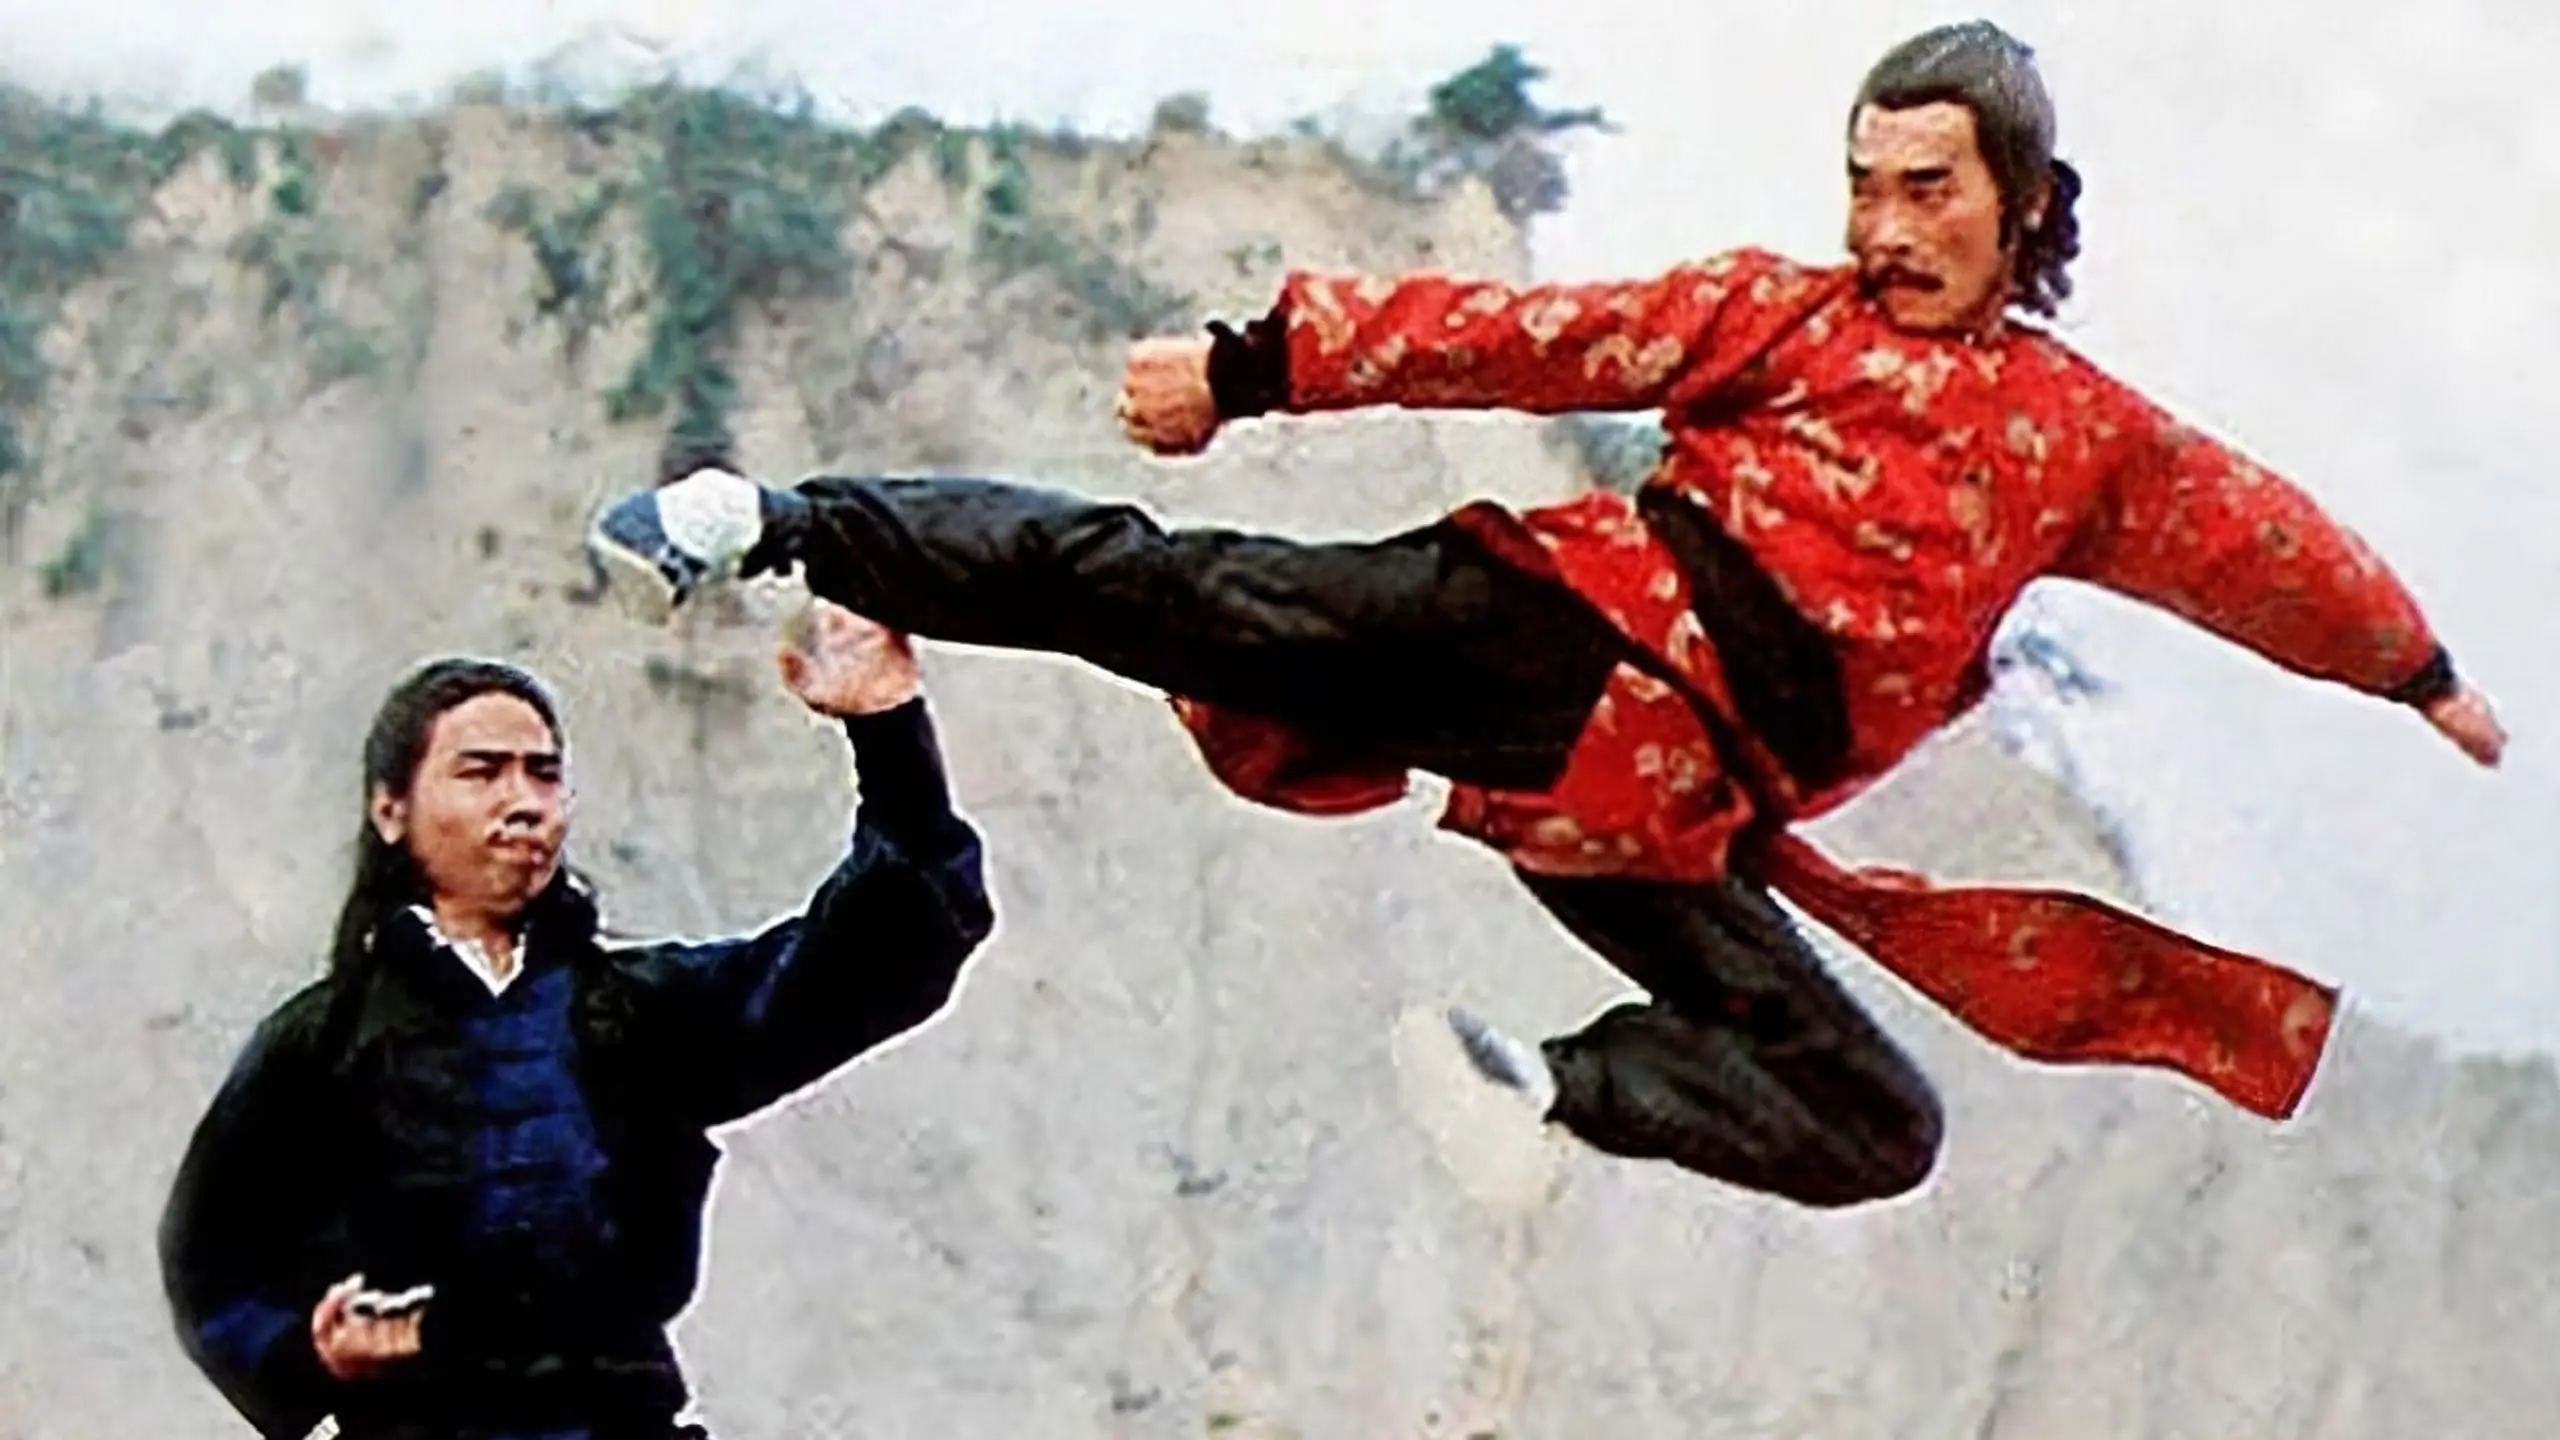 Kung Fu Man